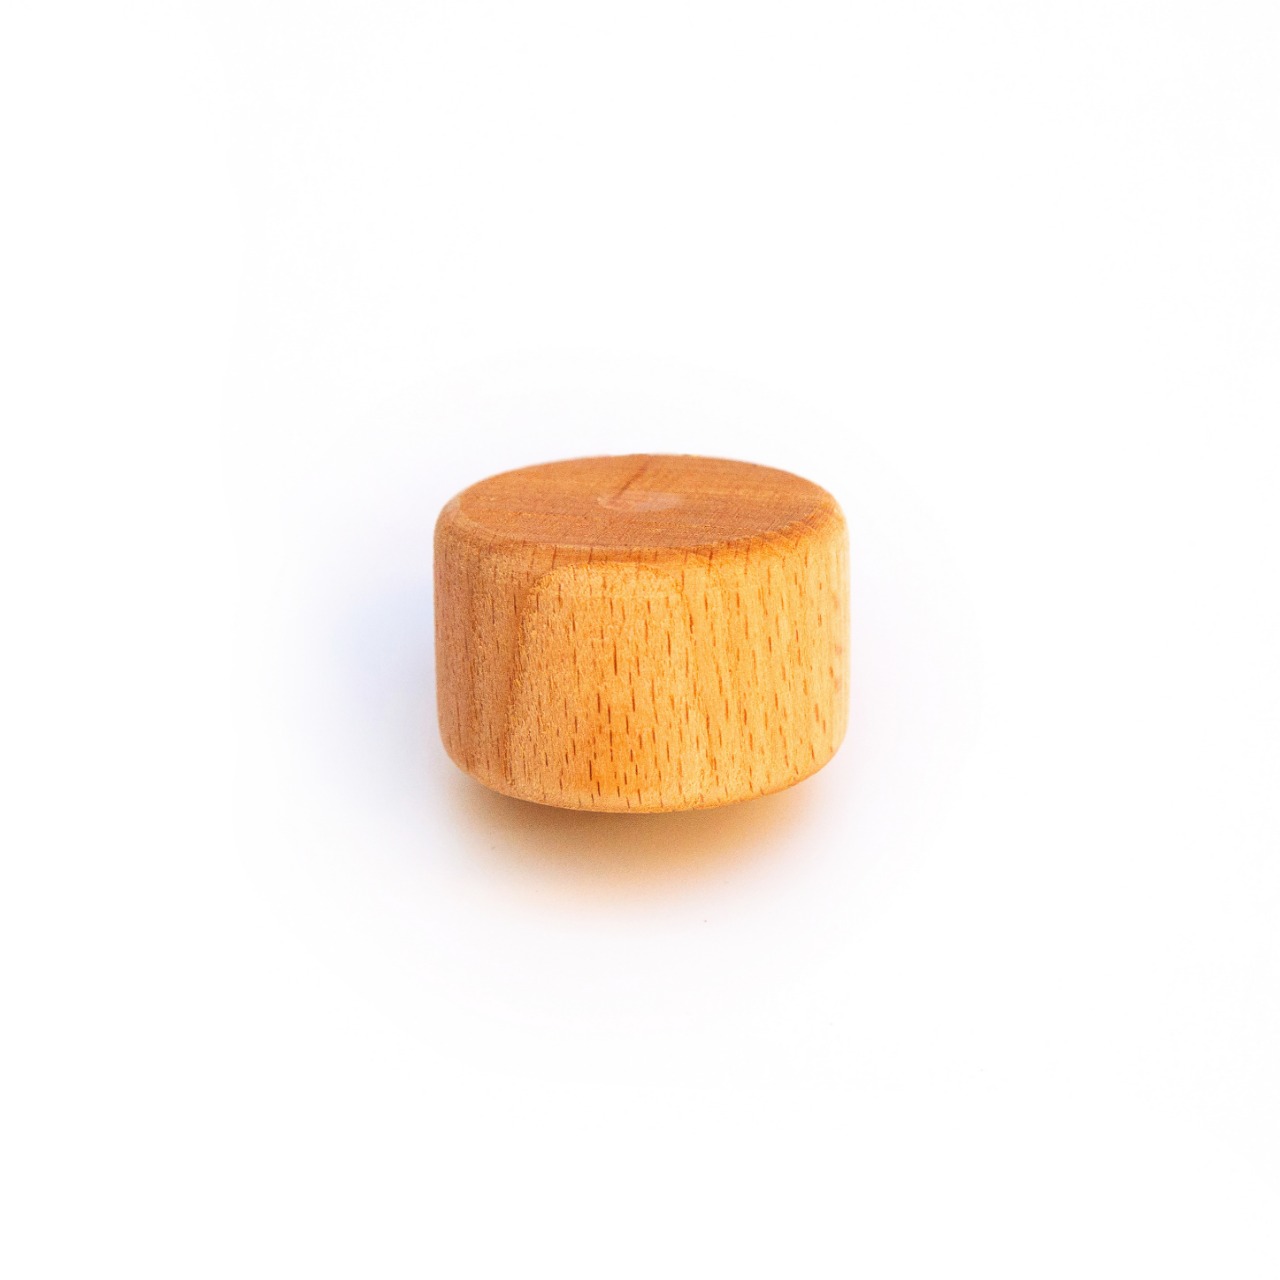 Купить Шайба 25 мм - Union Wood - резной декор, изделия из дерева